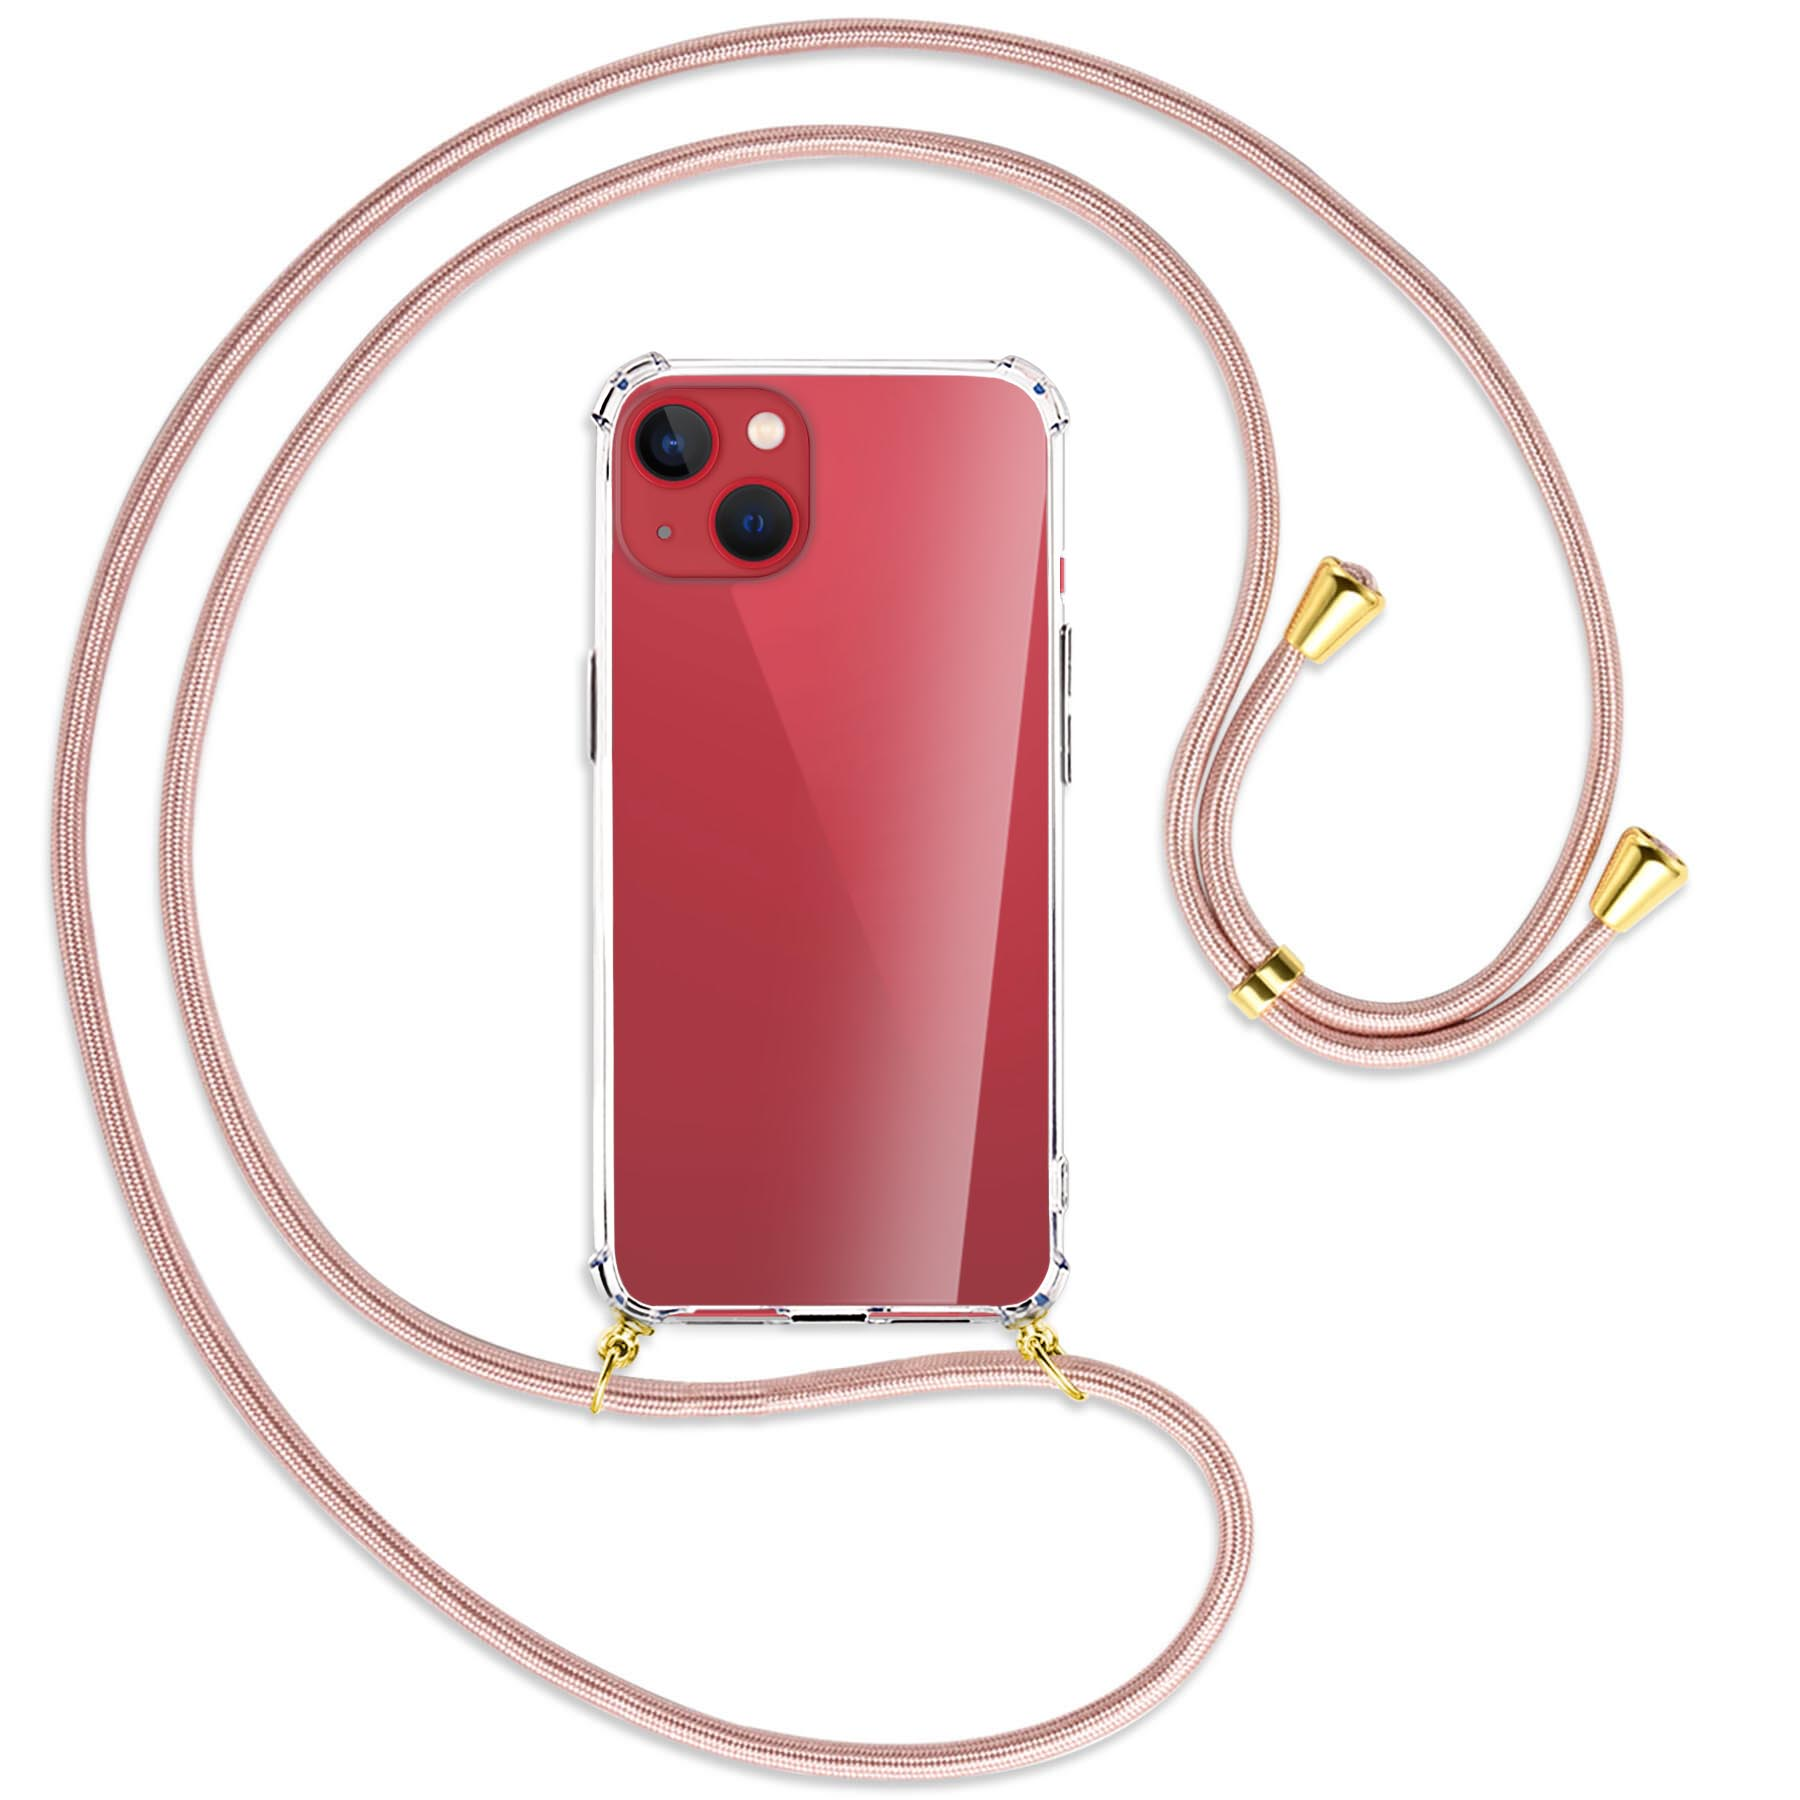 MTB MORE / Apple, Kordel, ENERGY mit Rosegold Gold 13 Backcover, iPhone mini, Umhänge-Hülle